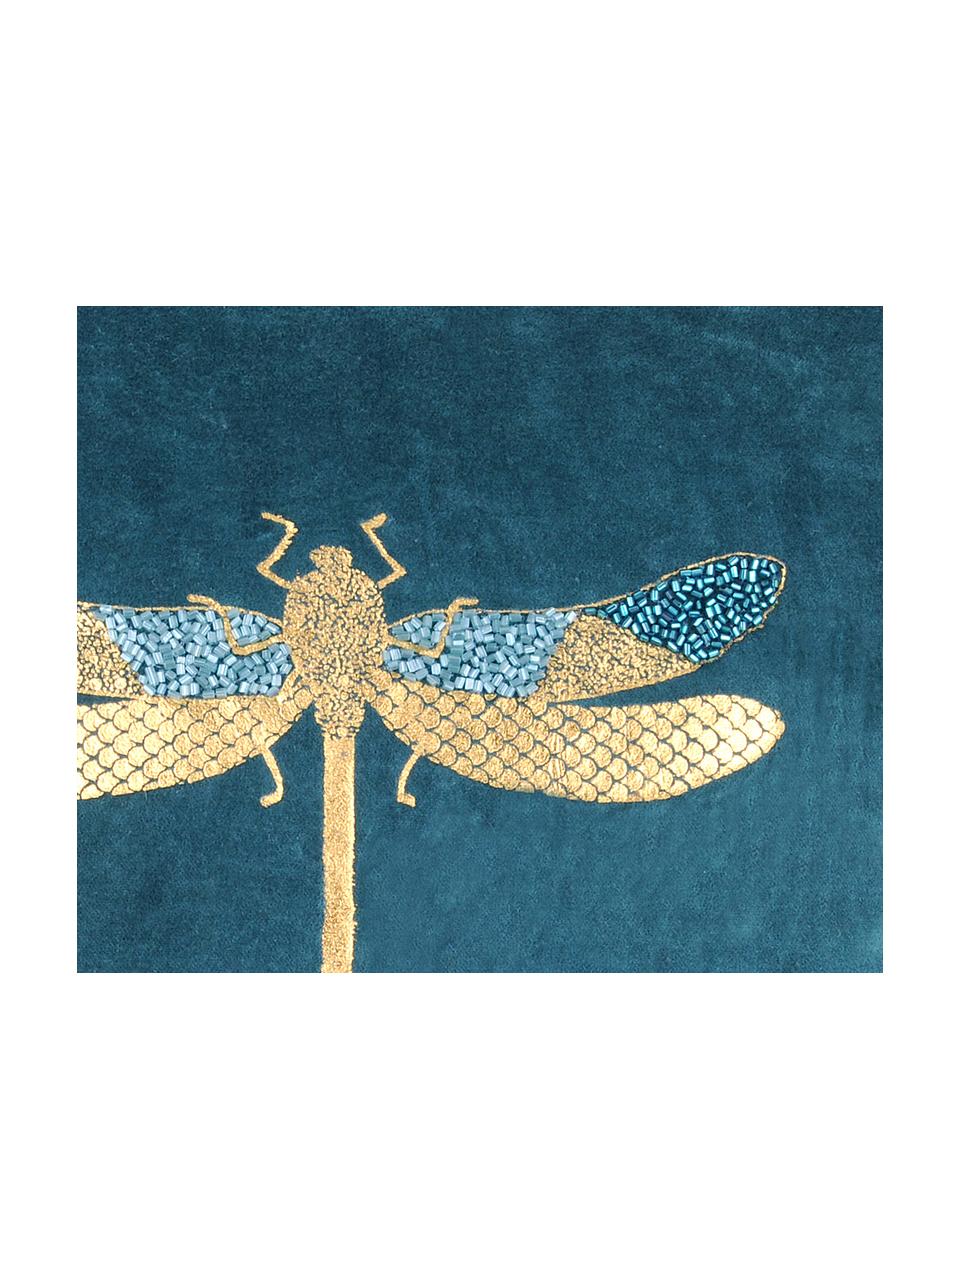 Coussin en velours imprimé libellule Cabaret, Velours de coton, Bleu pétrole, or, larg. 40 x long. 40 cm